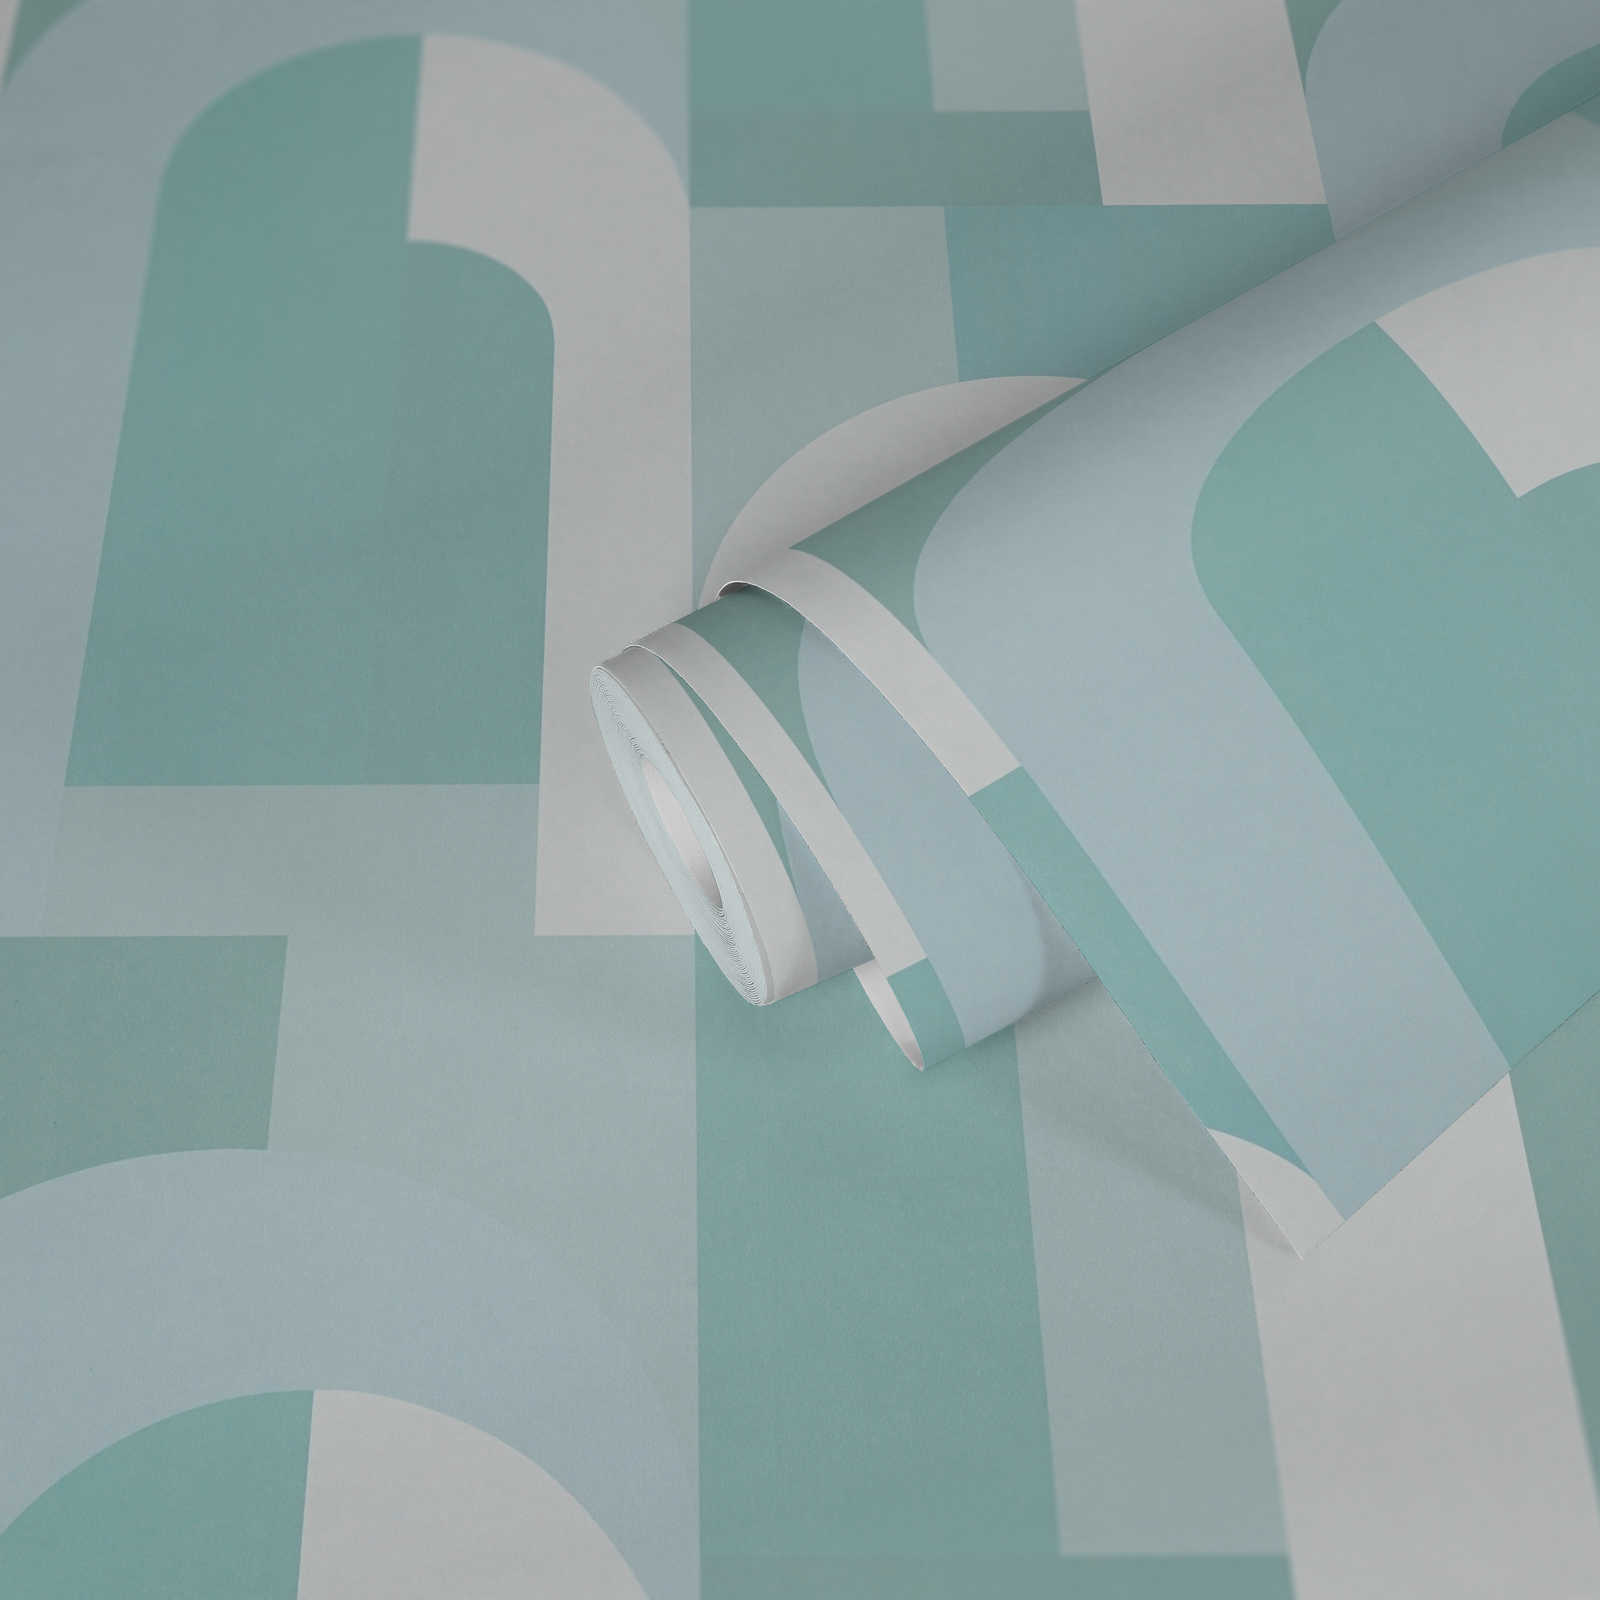             Papier peint graphique avec motif en arc - turquoise, blanc
        